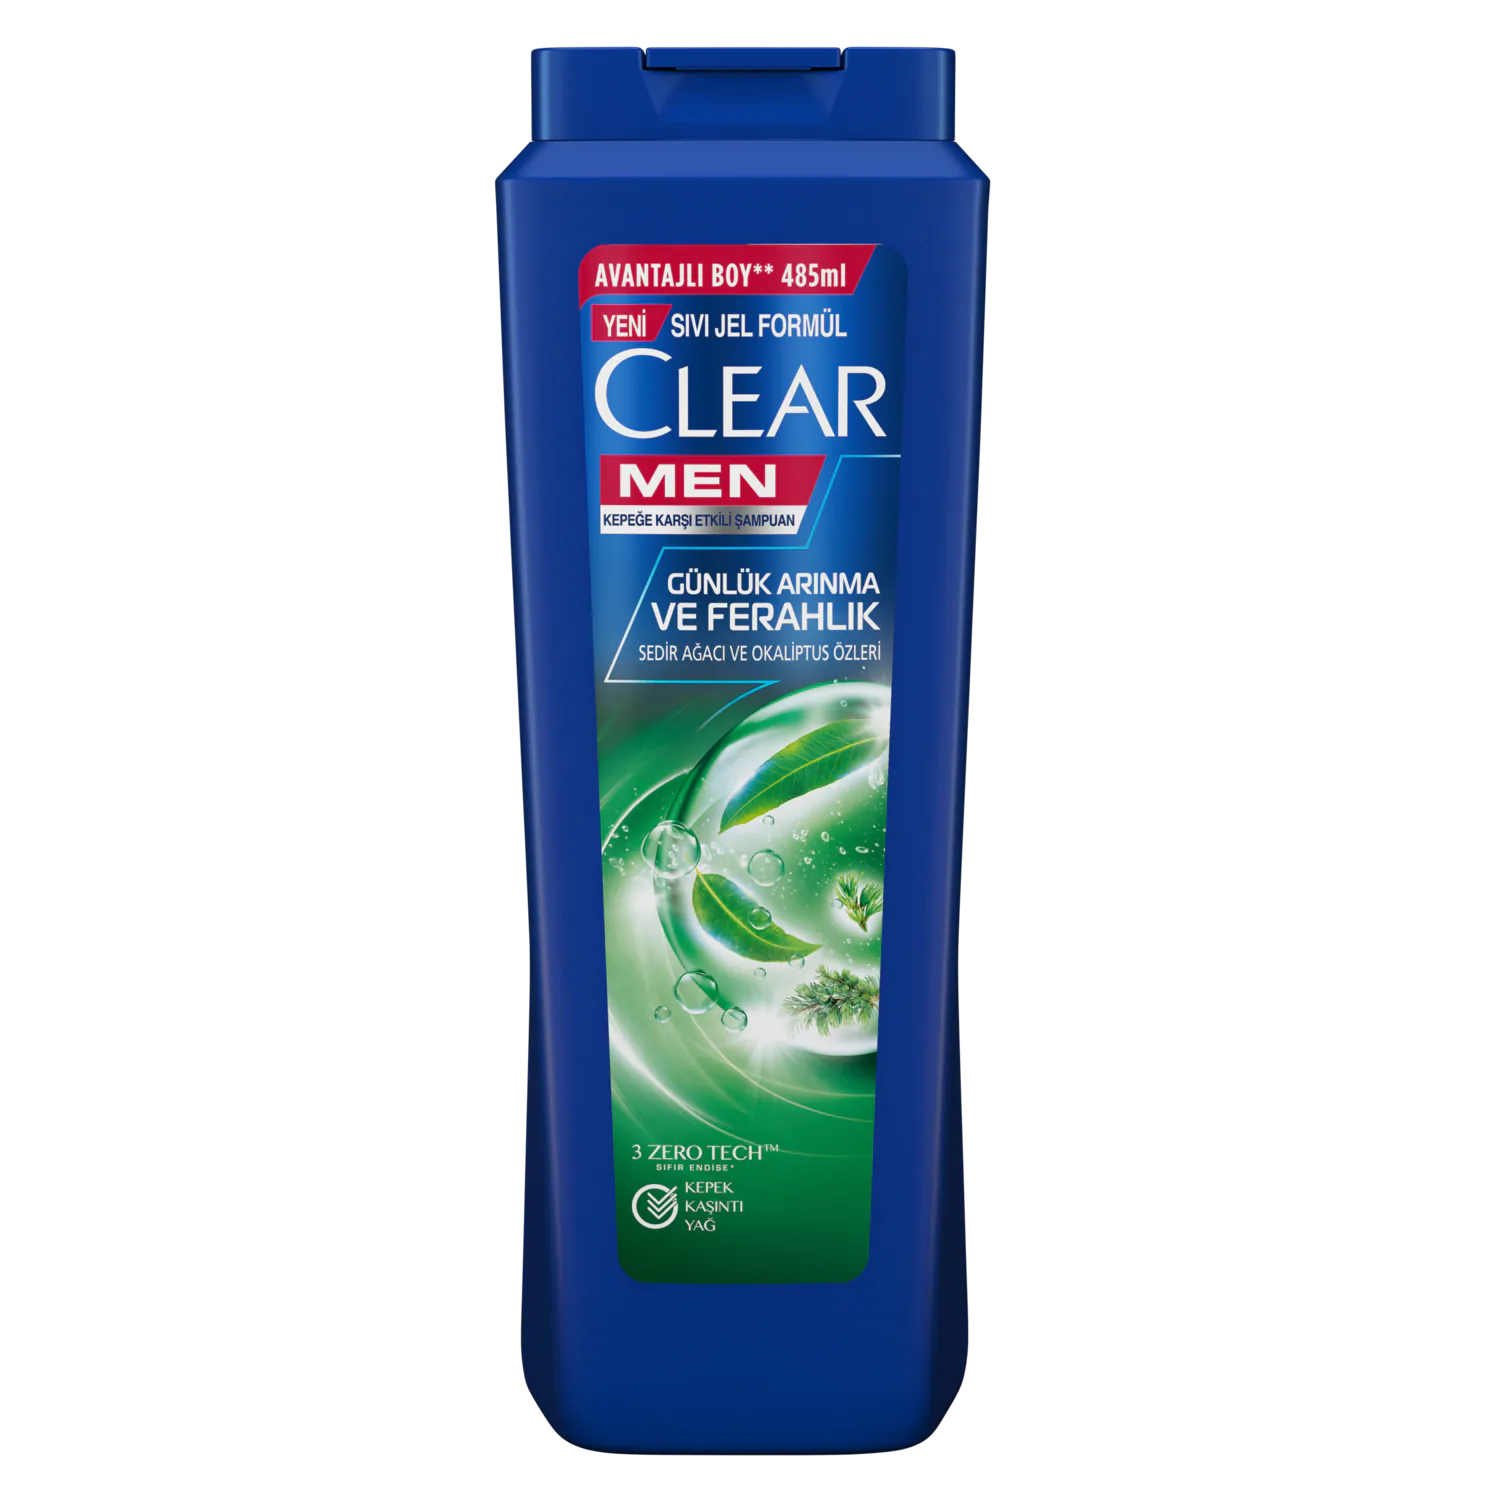 Clear Men Günlük Arınma ve Ferahlık Şampuan 485 ml - Thumbnail